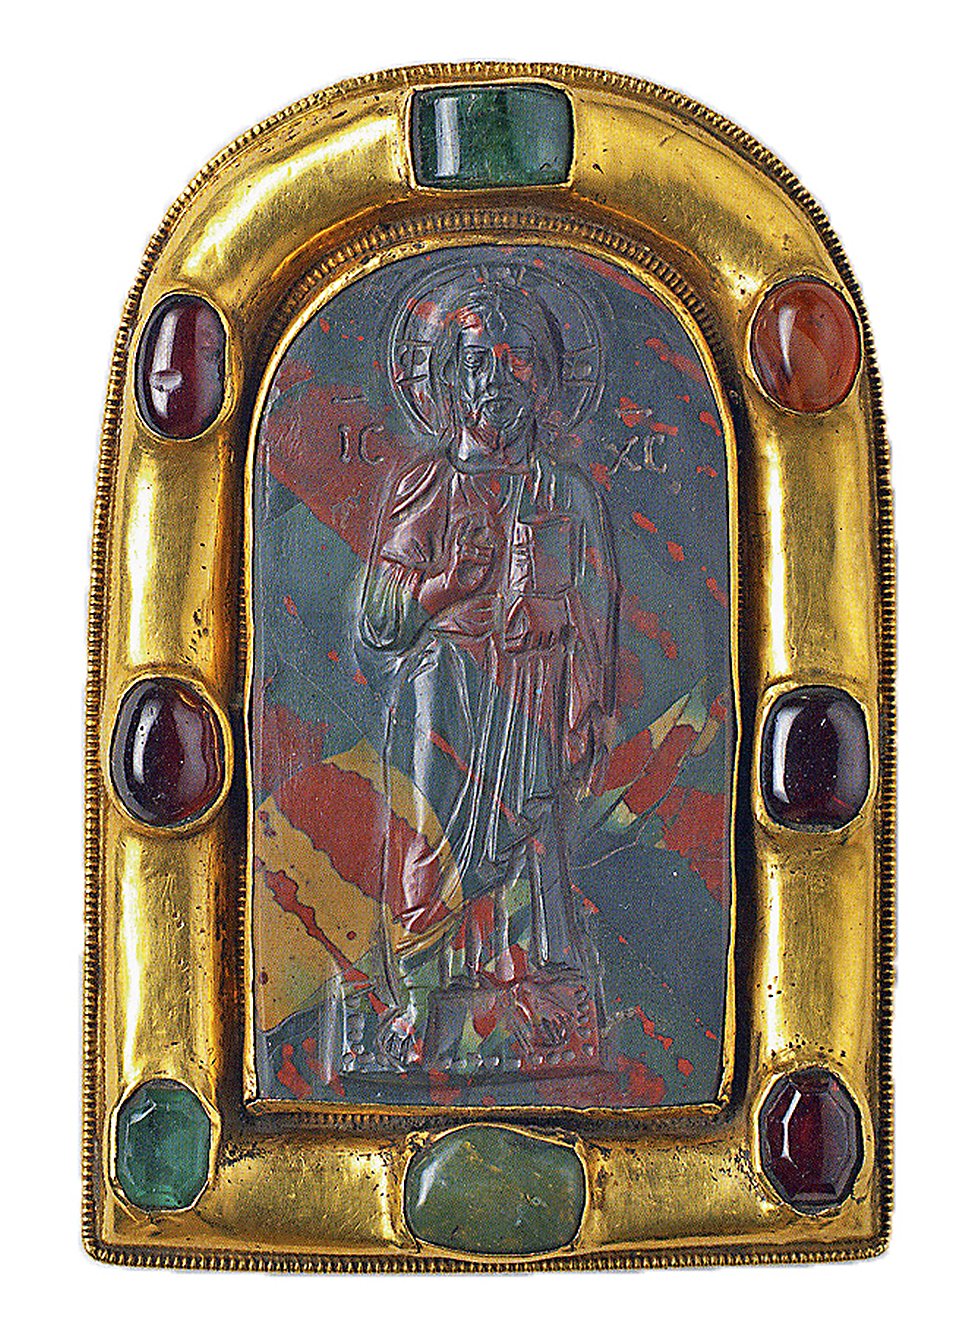 Камея в оправе
«Христос Пантократор»,
конец X — начало XI века